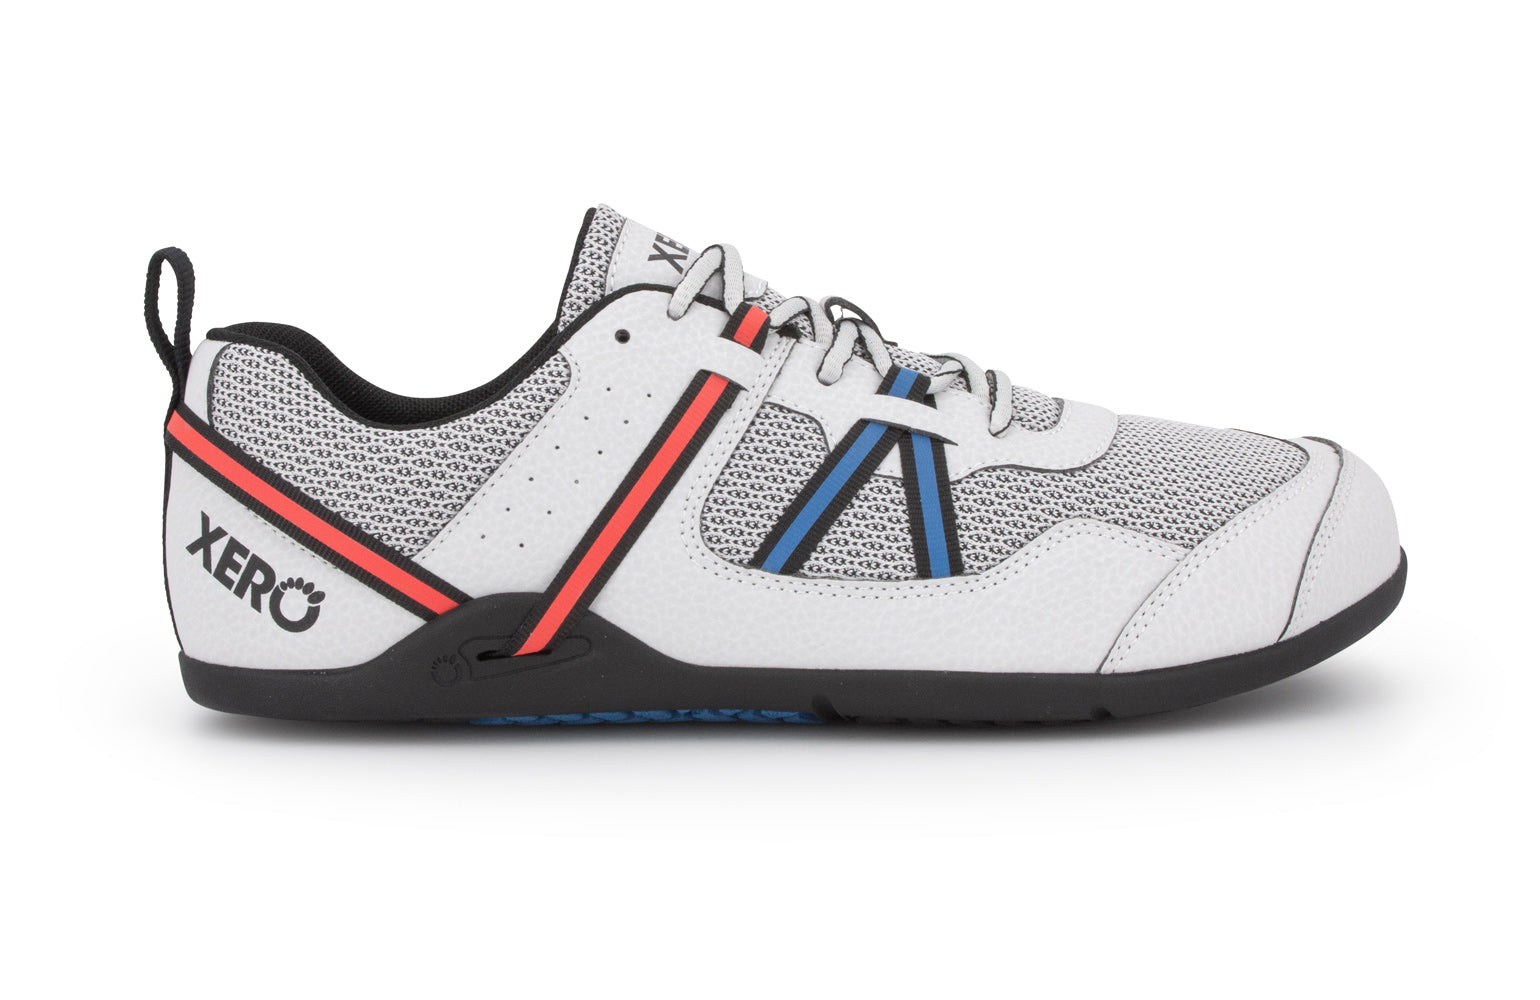 Xero Shoes Prio barfods løbesko/træningssko til mænd i farven lunar, yderside